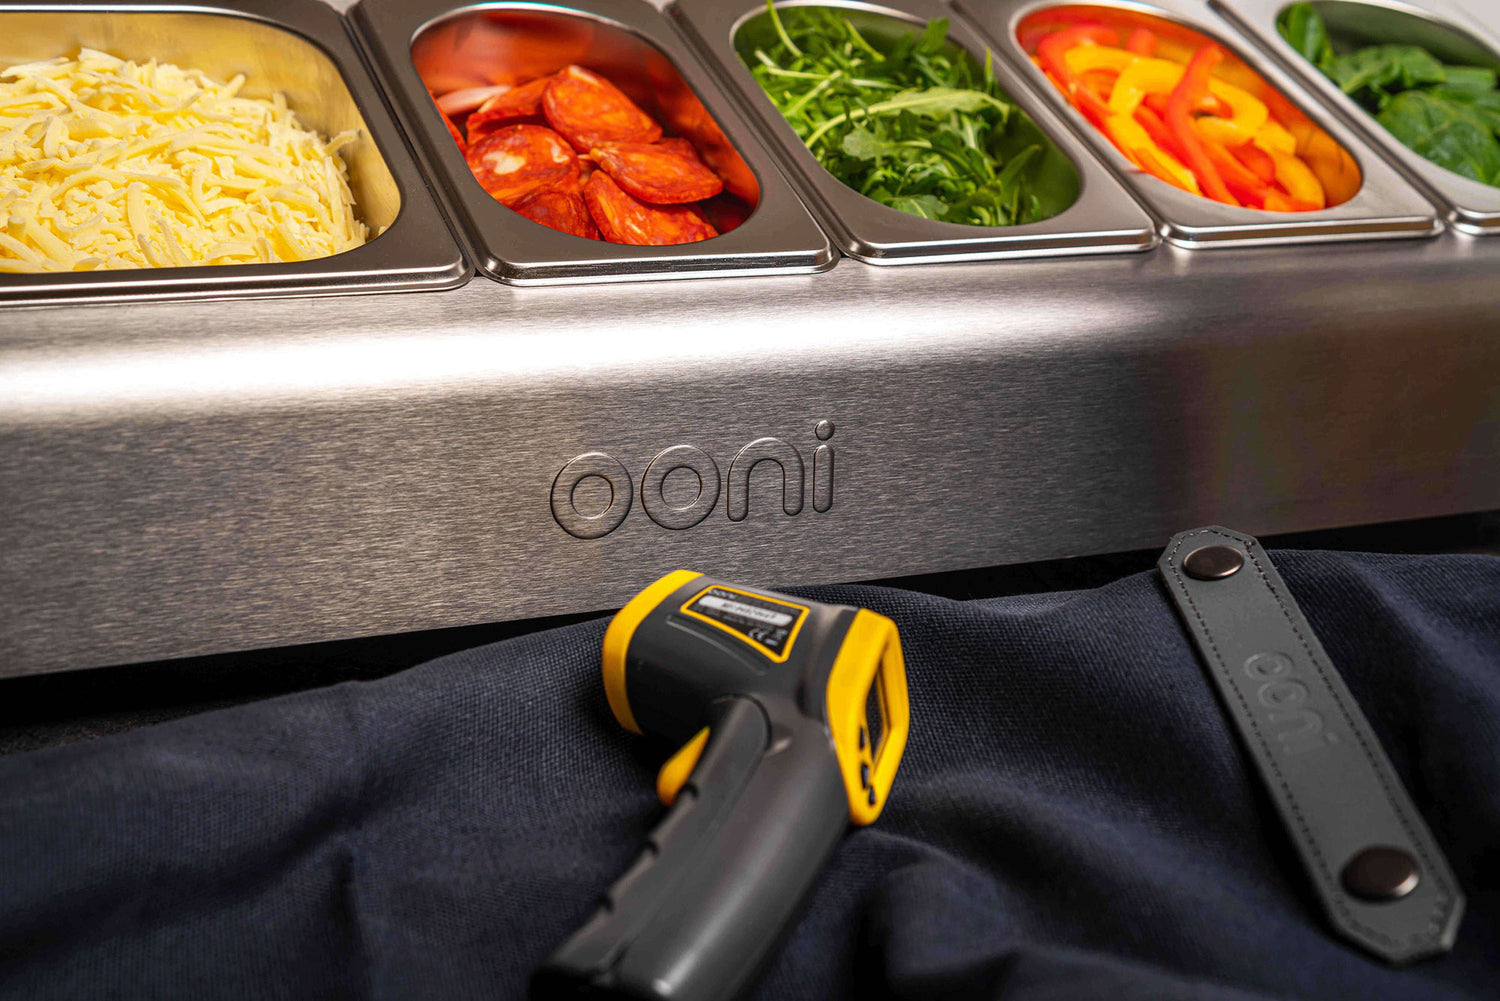 ooni-ingredient-trays-lifestyle-4.jpg